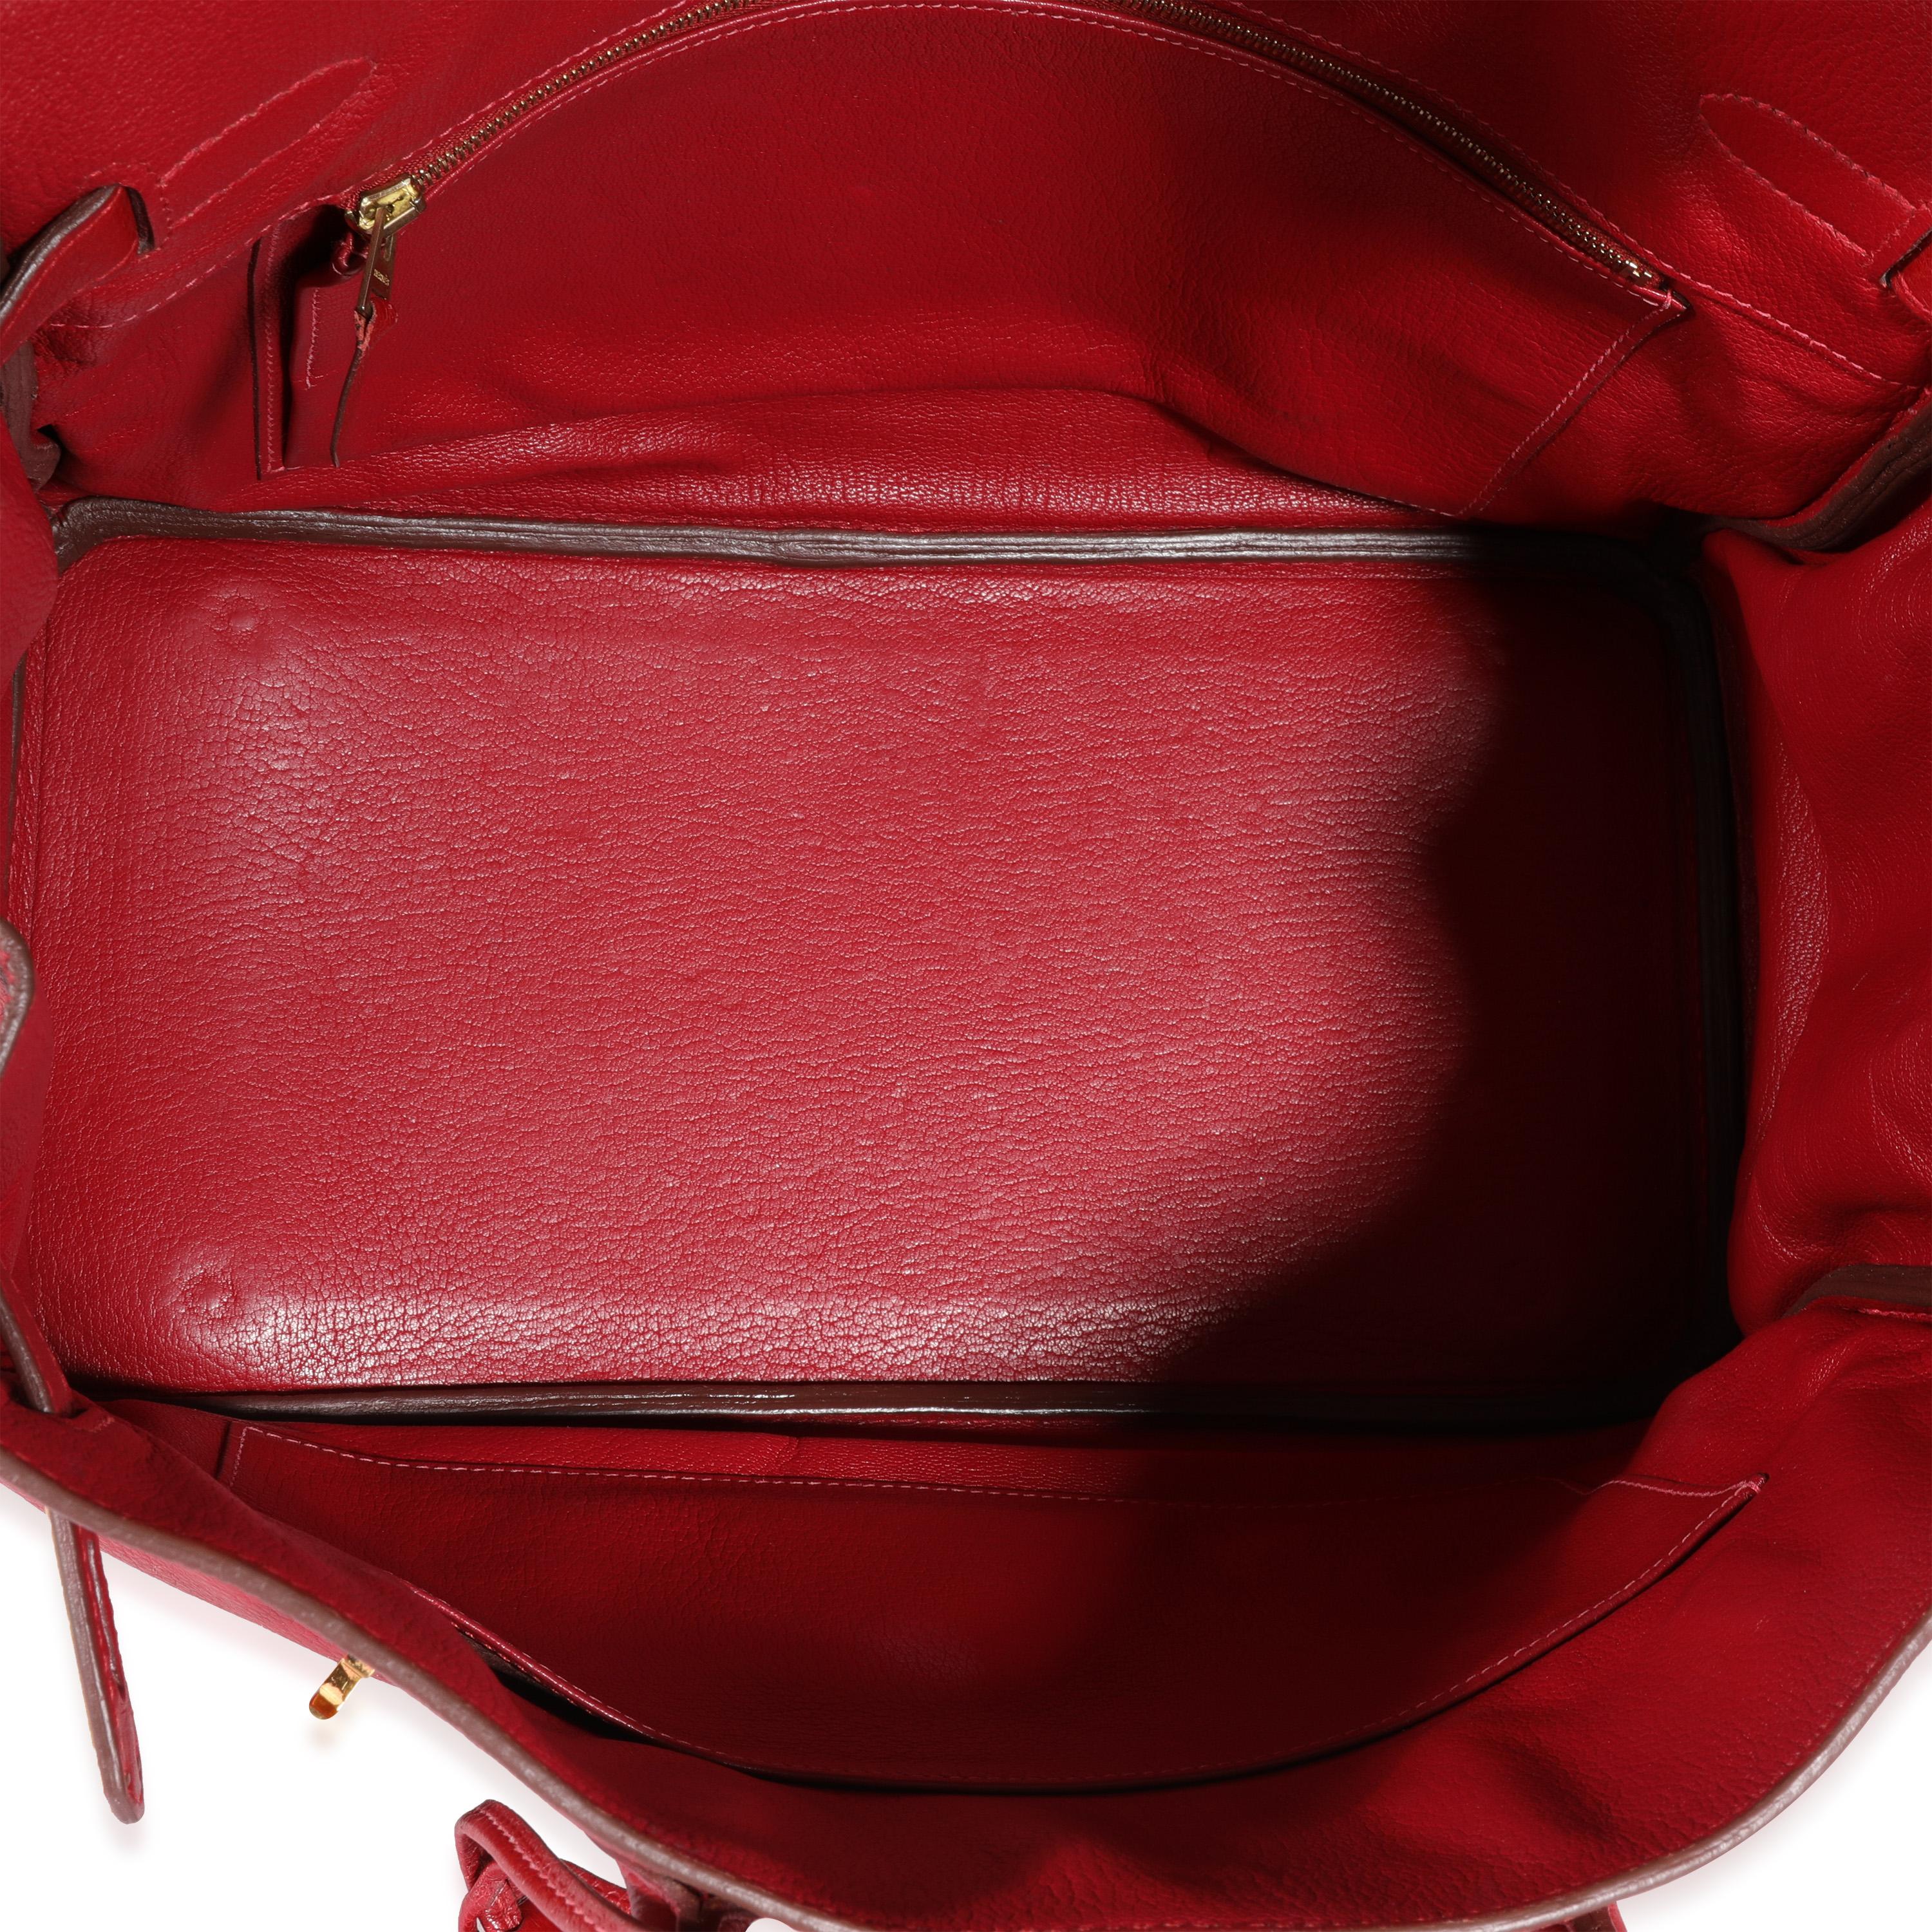 Listing Titel: Hermès Rouge Grenat Clèmence Birkin 35 GHW
SKU: 120331
Zustand: Gebraucht 
Zustand der Handtasche: Sehr gut
Bemerkungen zum Zustand: Kratzer an den Füßen. Abnutzung an Ecken und Griffen. Kratzer an der Hardware. Abnutzung der